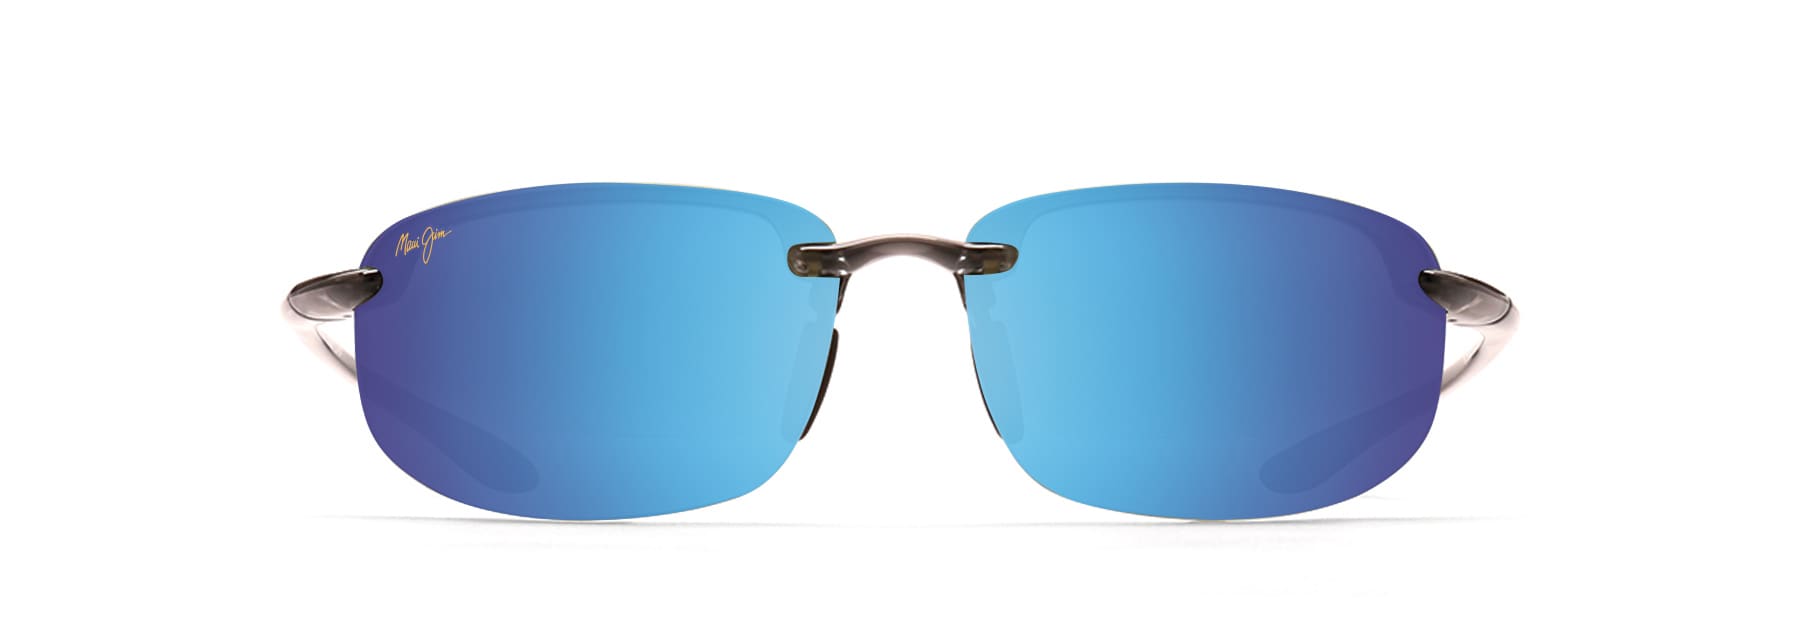 Ho'okipa Reader Polarized Sunglasses | Maui Jim®